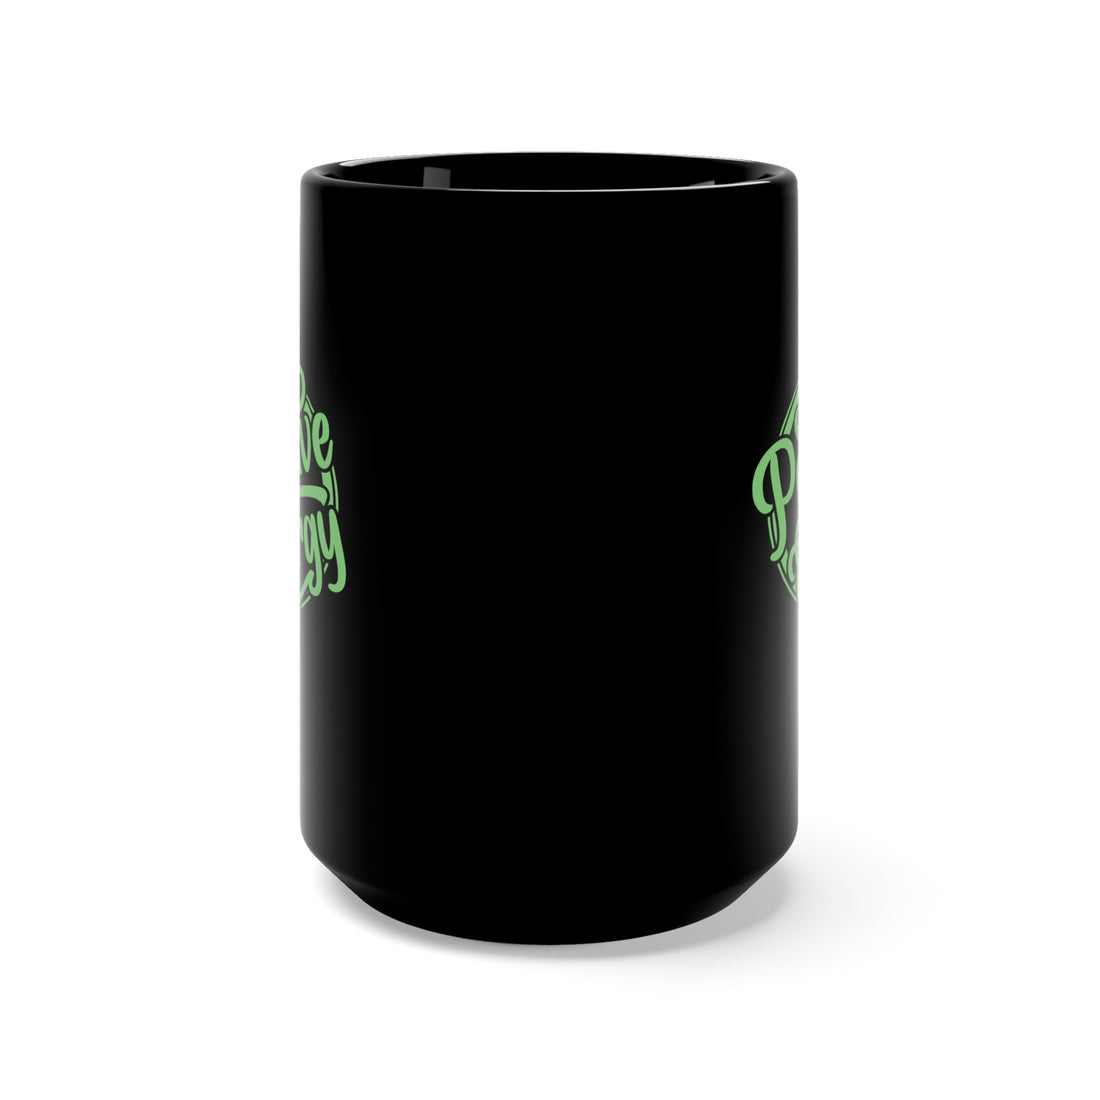 Positive Energy - Large 15oz Black Mug